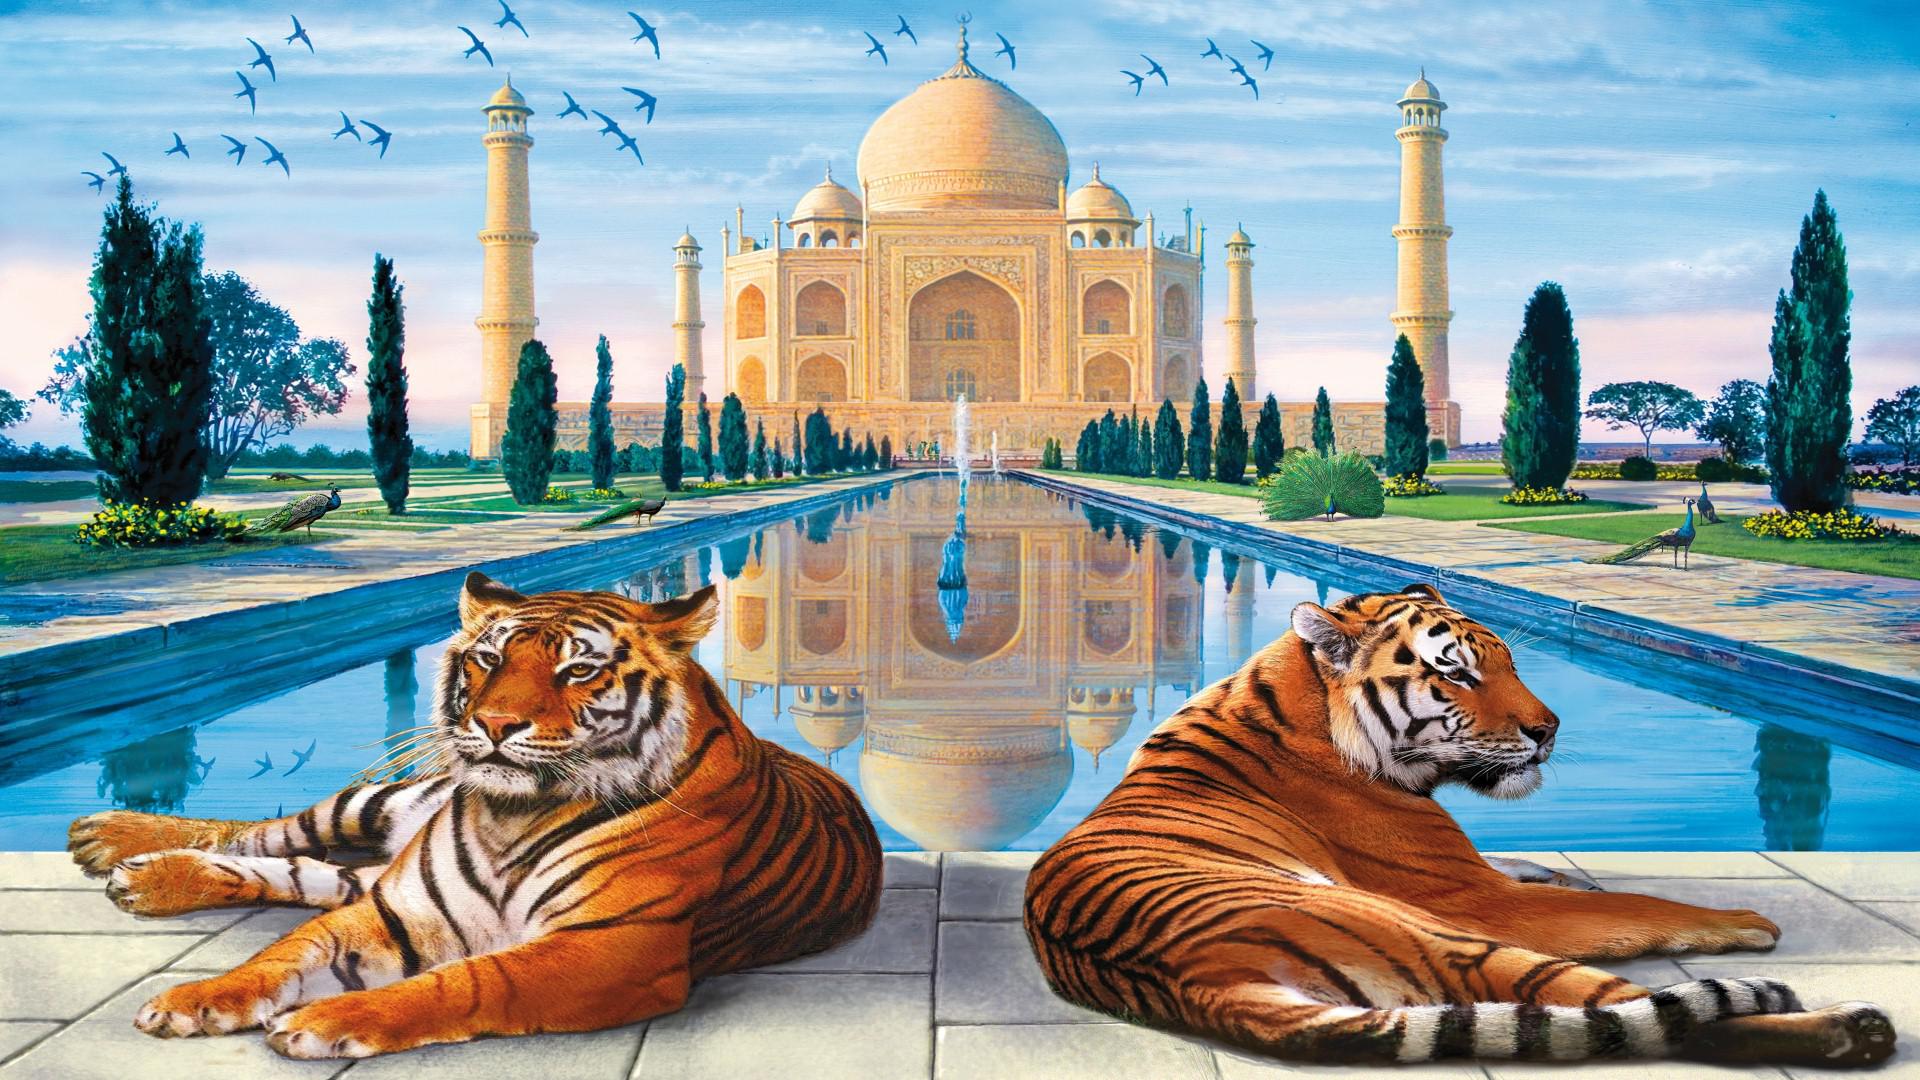 Full Hd Image Of Taj Mahal - HD Wallpaper 